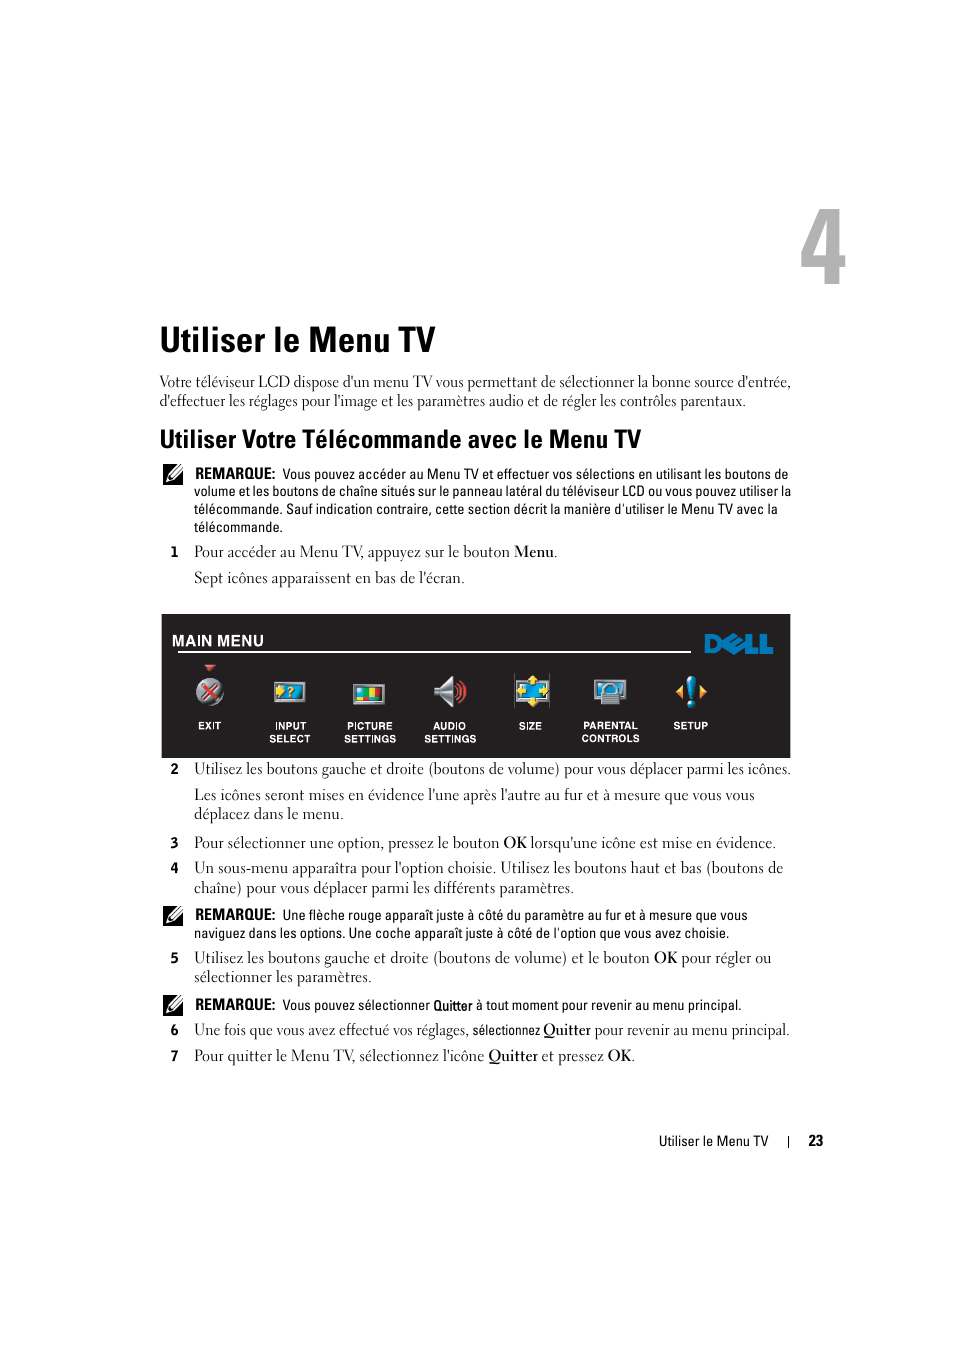 Utiliser le menu tv, Utiliser votre télécommande avec le menu tv | Dell LCD TV W2606C Manuel d'utilisation | Page 23 / 60